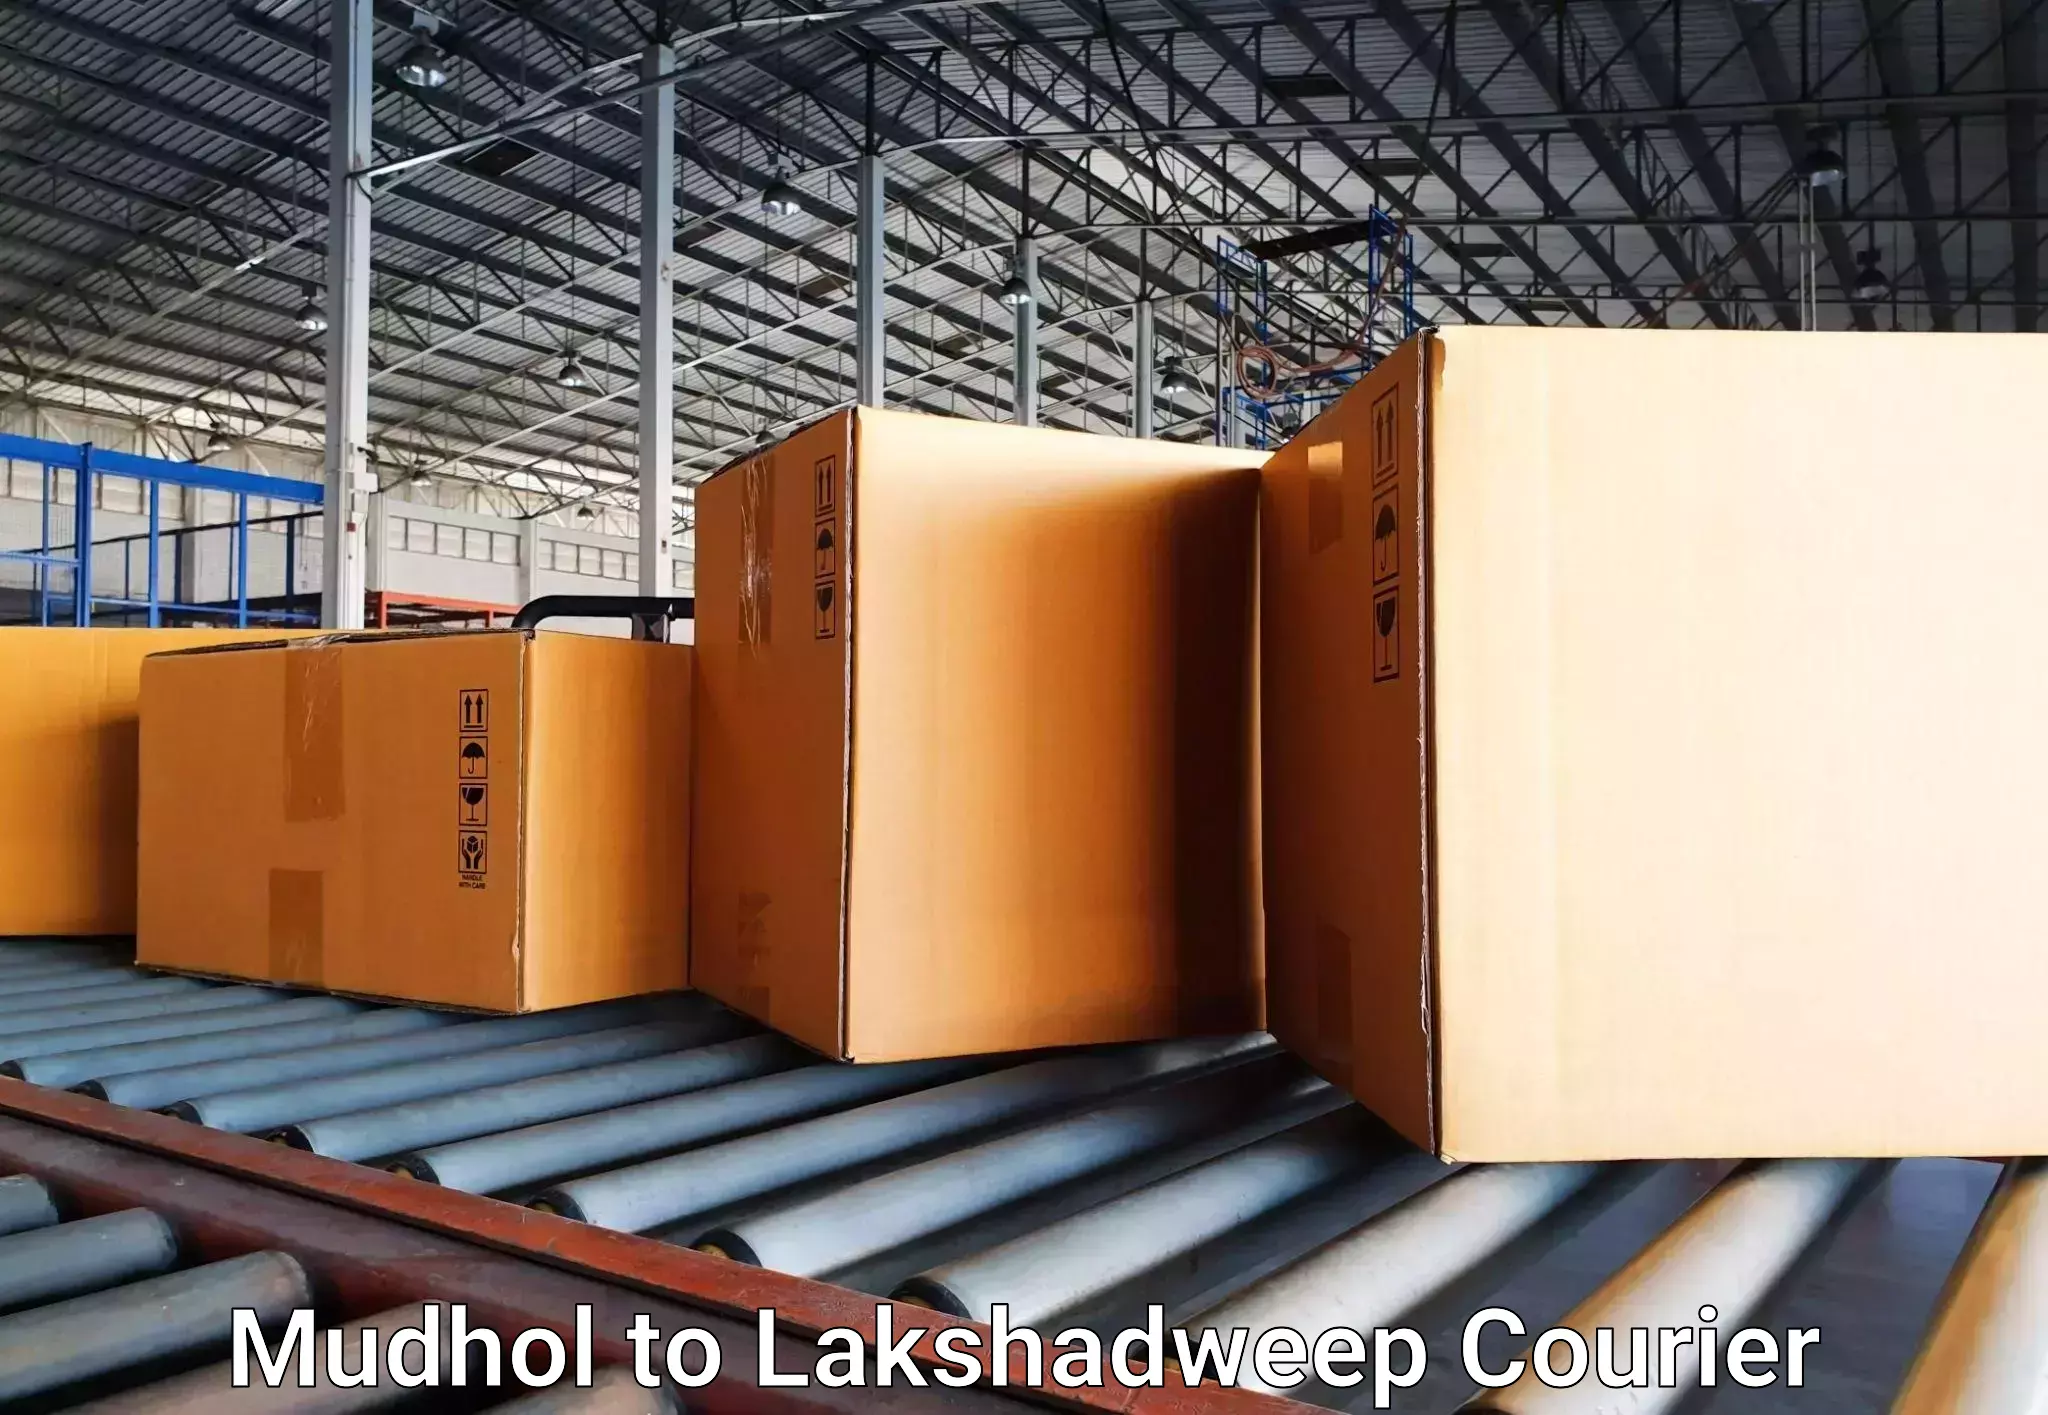 Luggage delivery app Mudhol to Lakshadweep